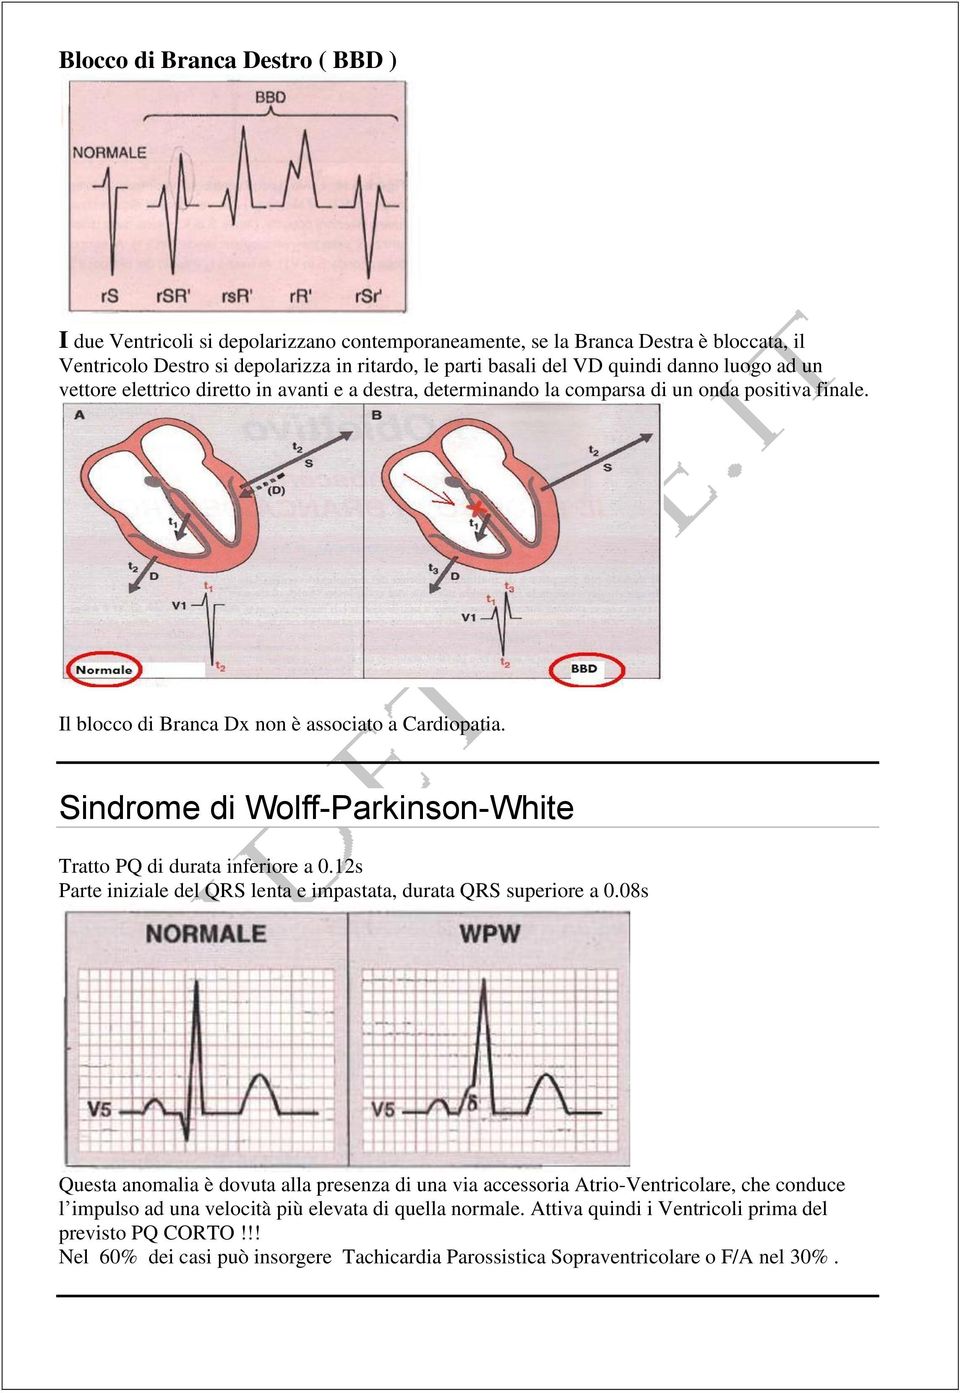 Sindrome di Wolff-Parkinson-White Tratto PQ di durata inferiore a 0.12s Parte iniziale del QRS lenta e impastata, durata QRS superiore a 0.